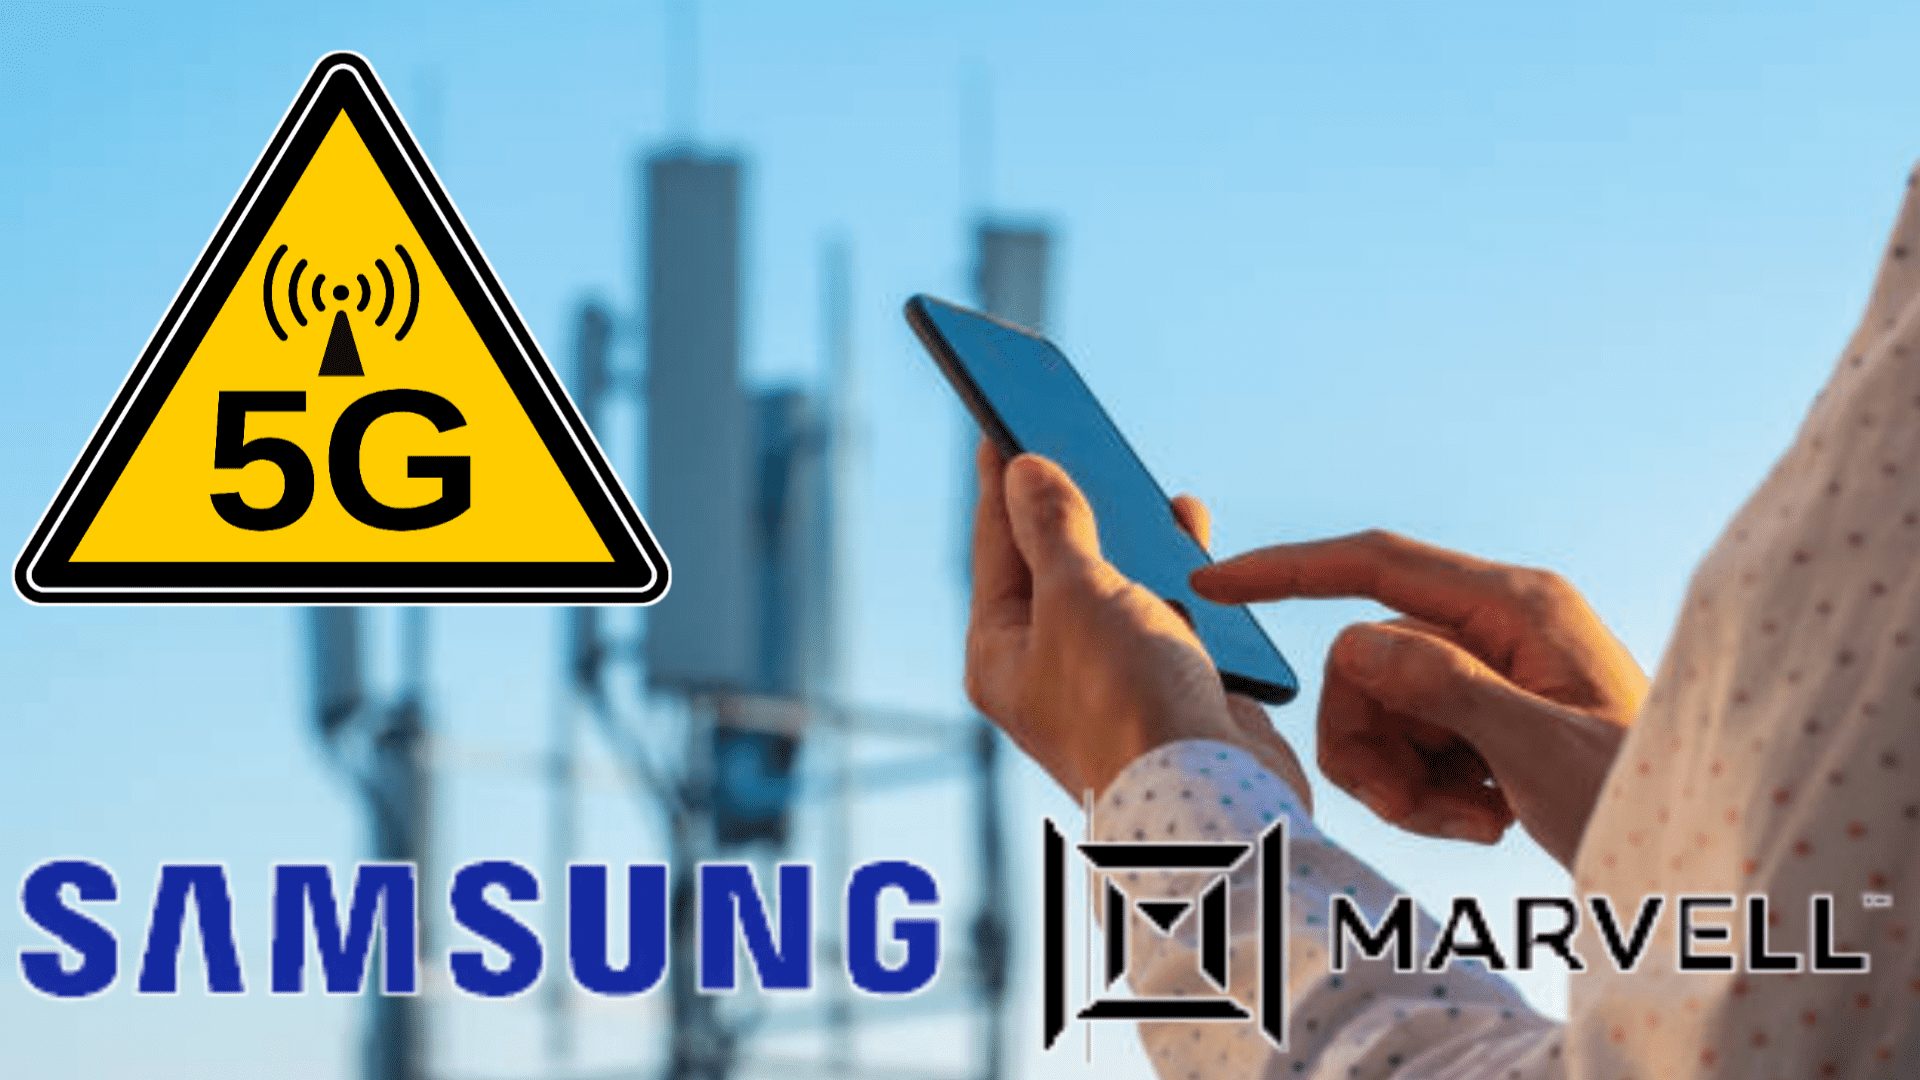 تعاون Samsung و Marvell في تطوير شبكات 5G بتقنية MIMO